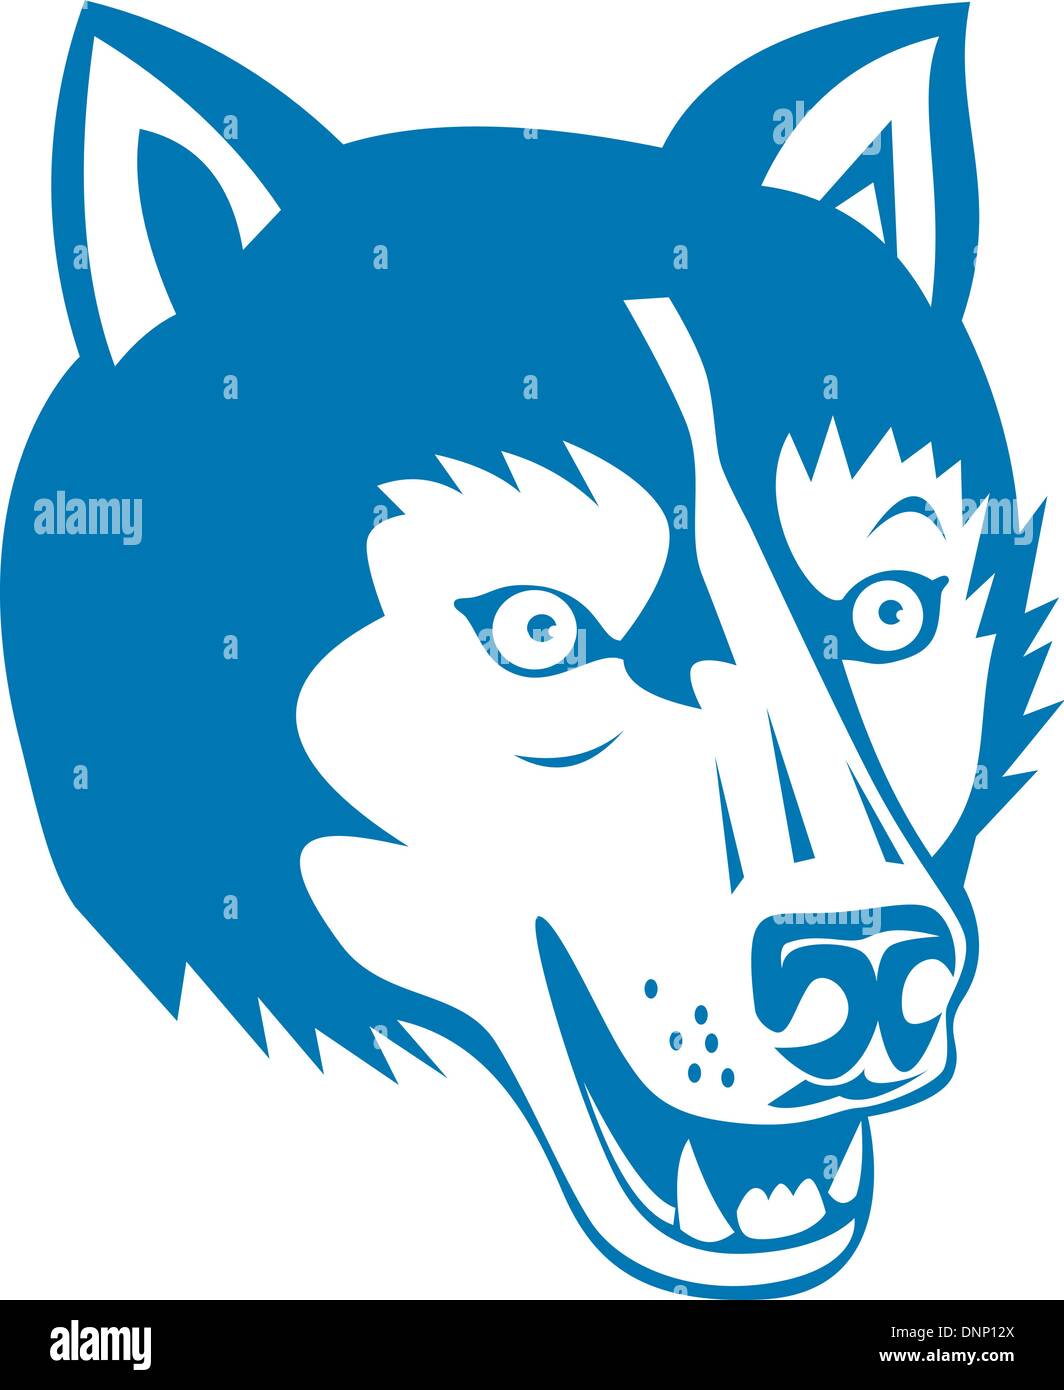 Ilustración de un perro salvaje de la cabeza del lobo hecho en estilo retro de fondo aislado Ilustración del Vector